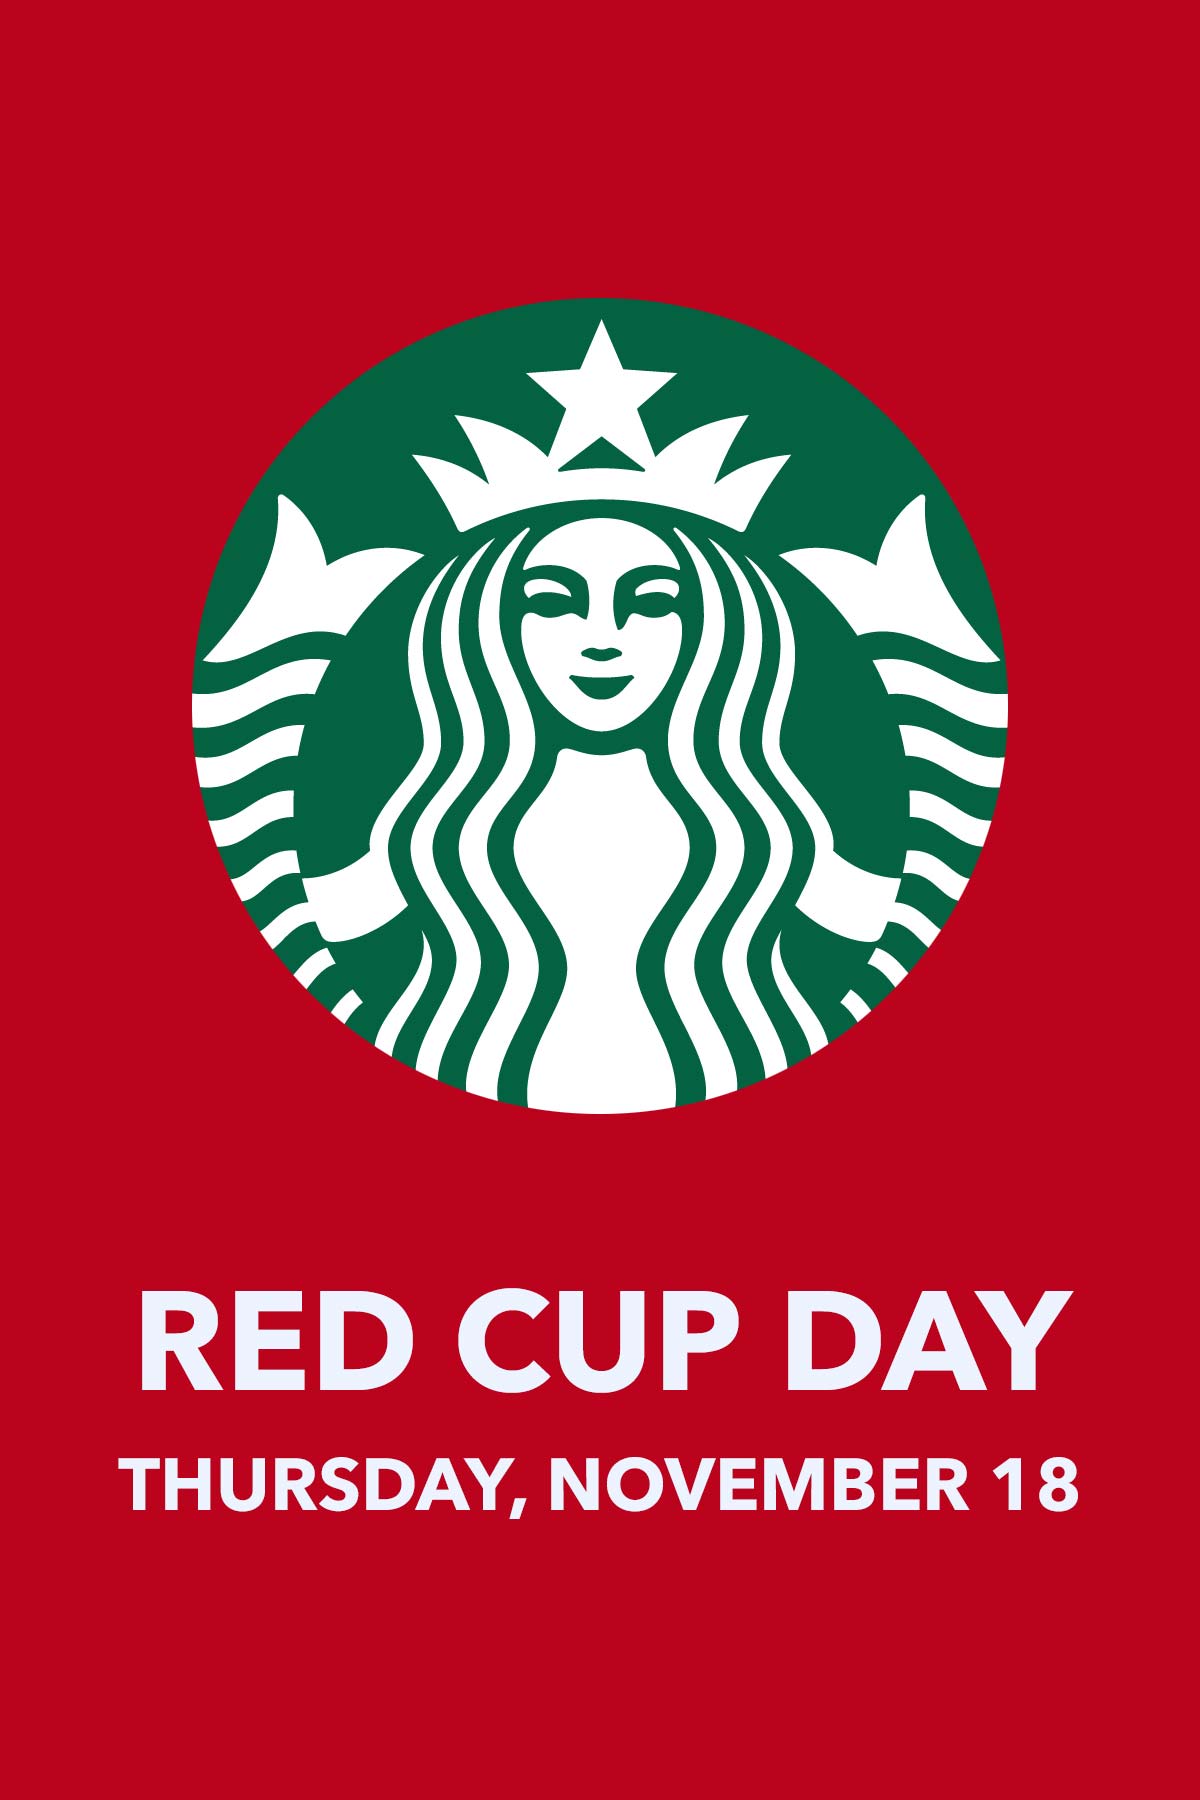 Starbucks logo on red background.